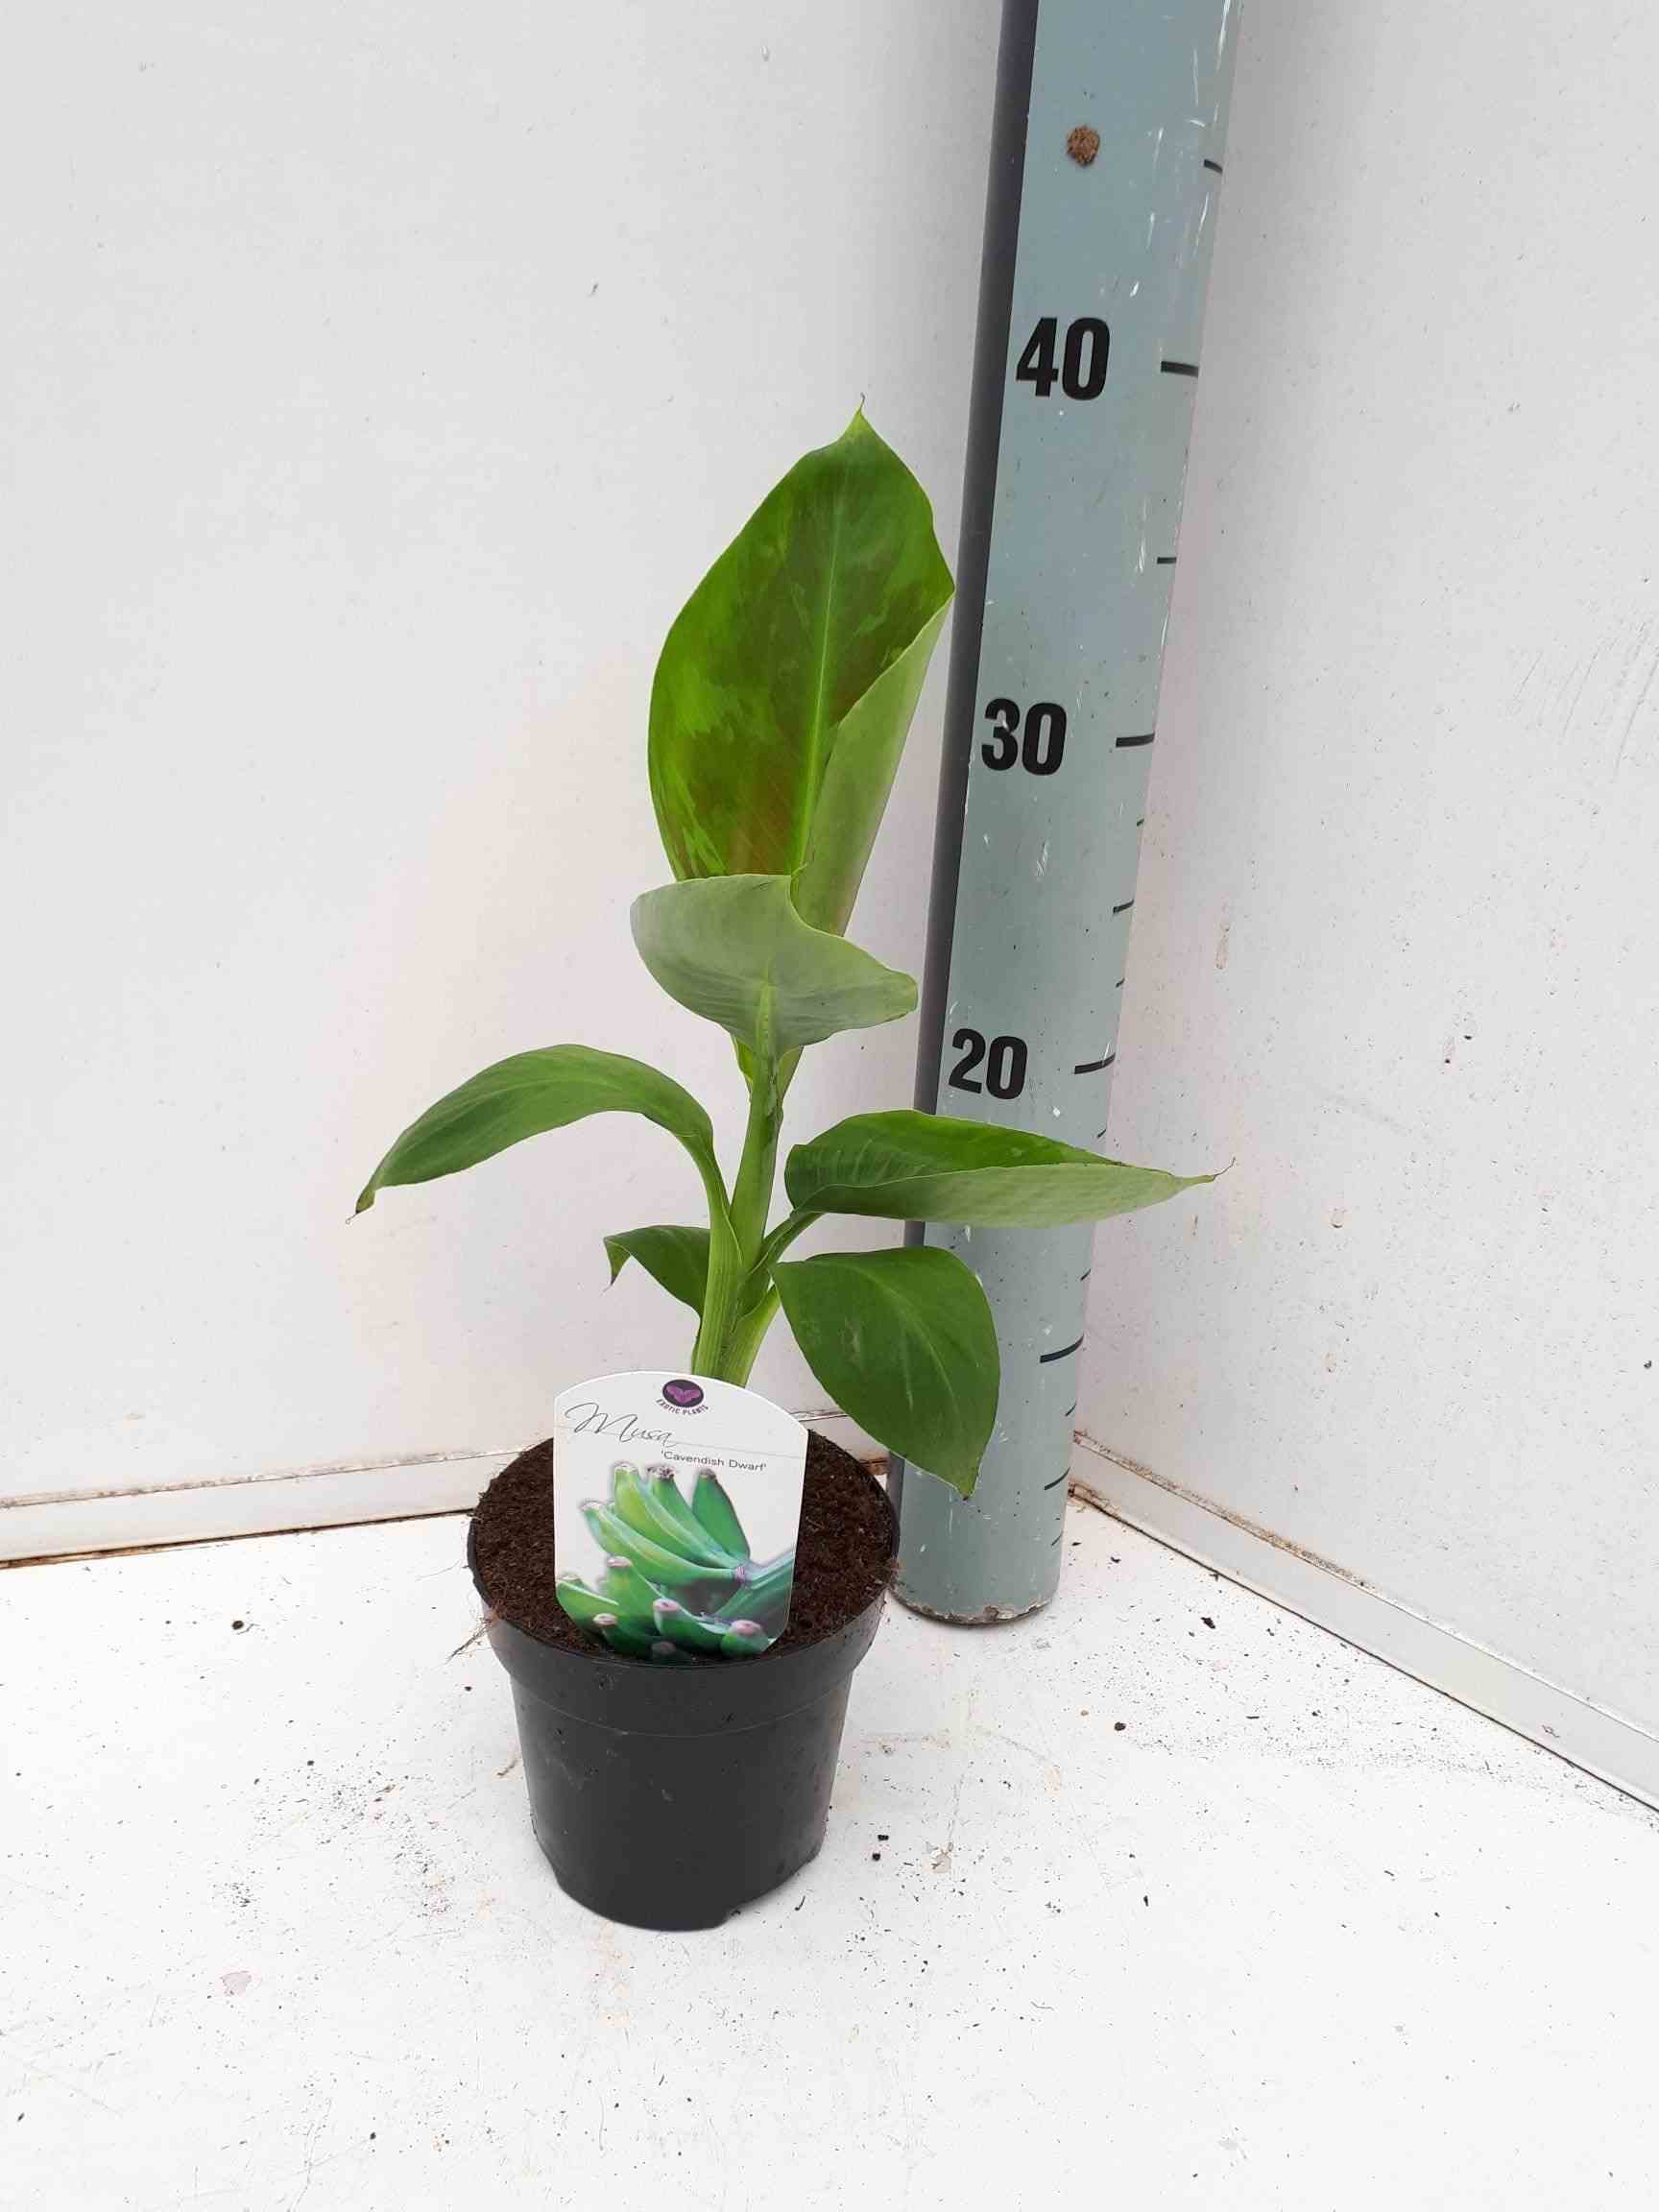 Bananier musa acuminata cv. Super dwarf cavendish specimen   rose - taille pot de 40 litres ? 100/120 cm